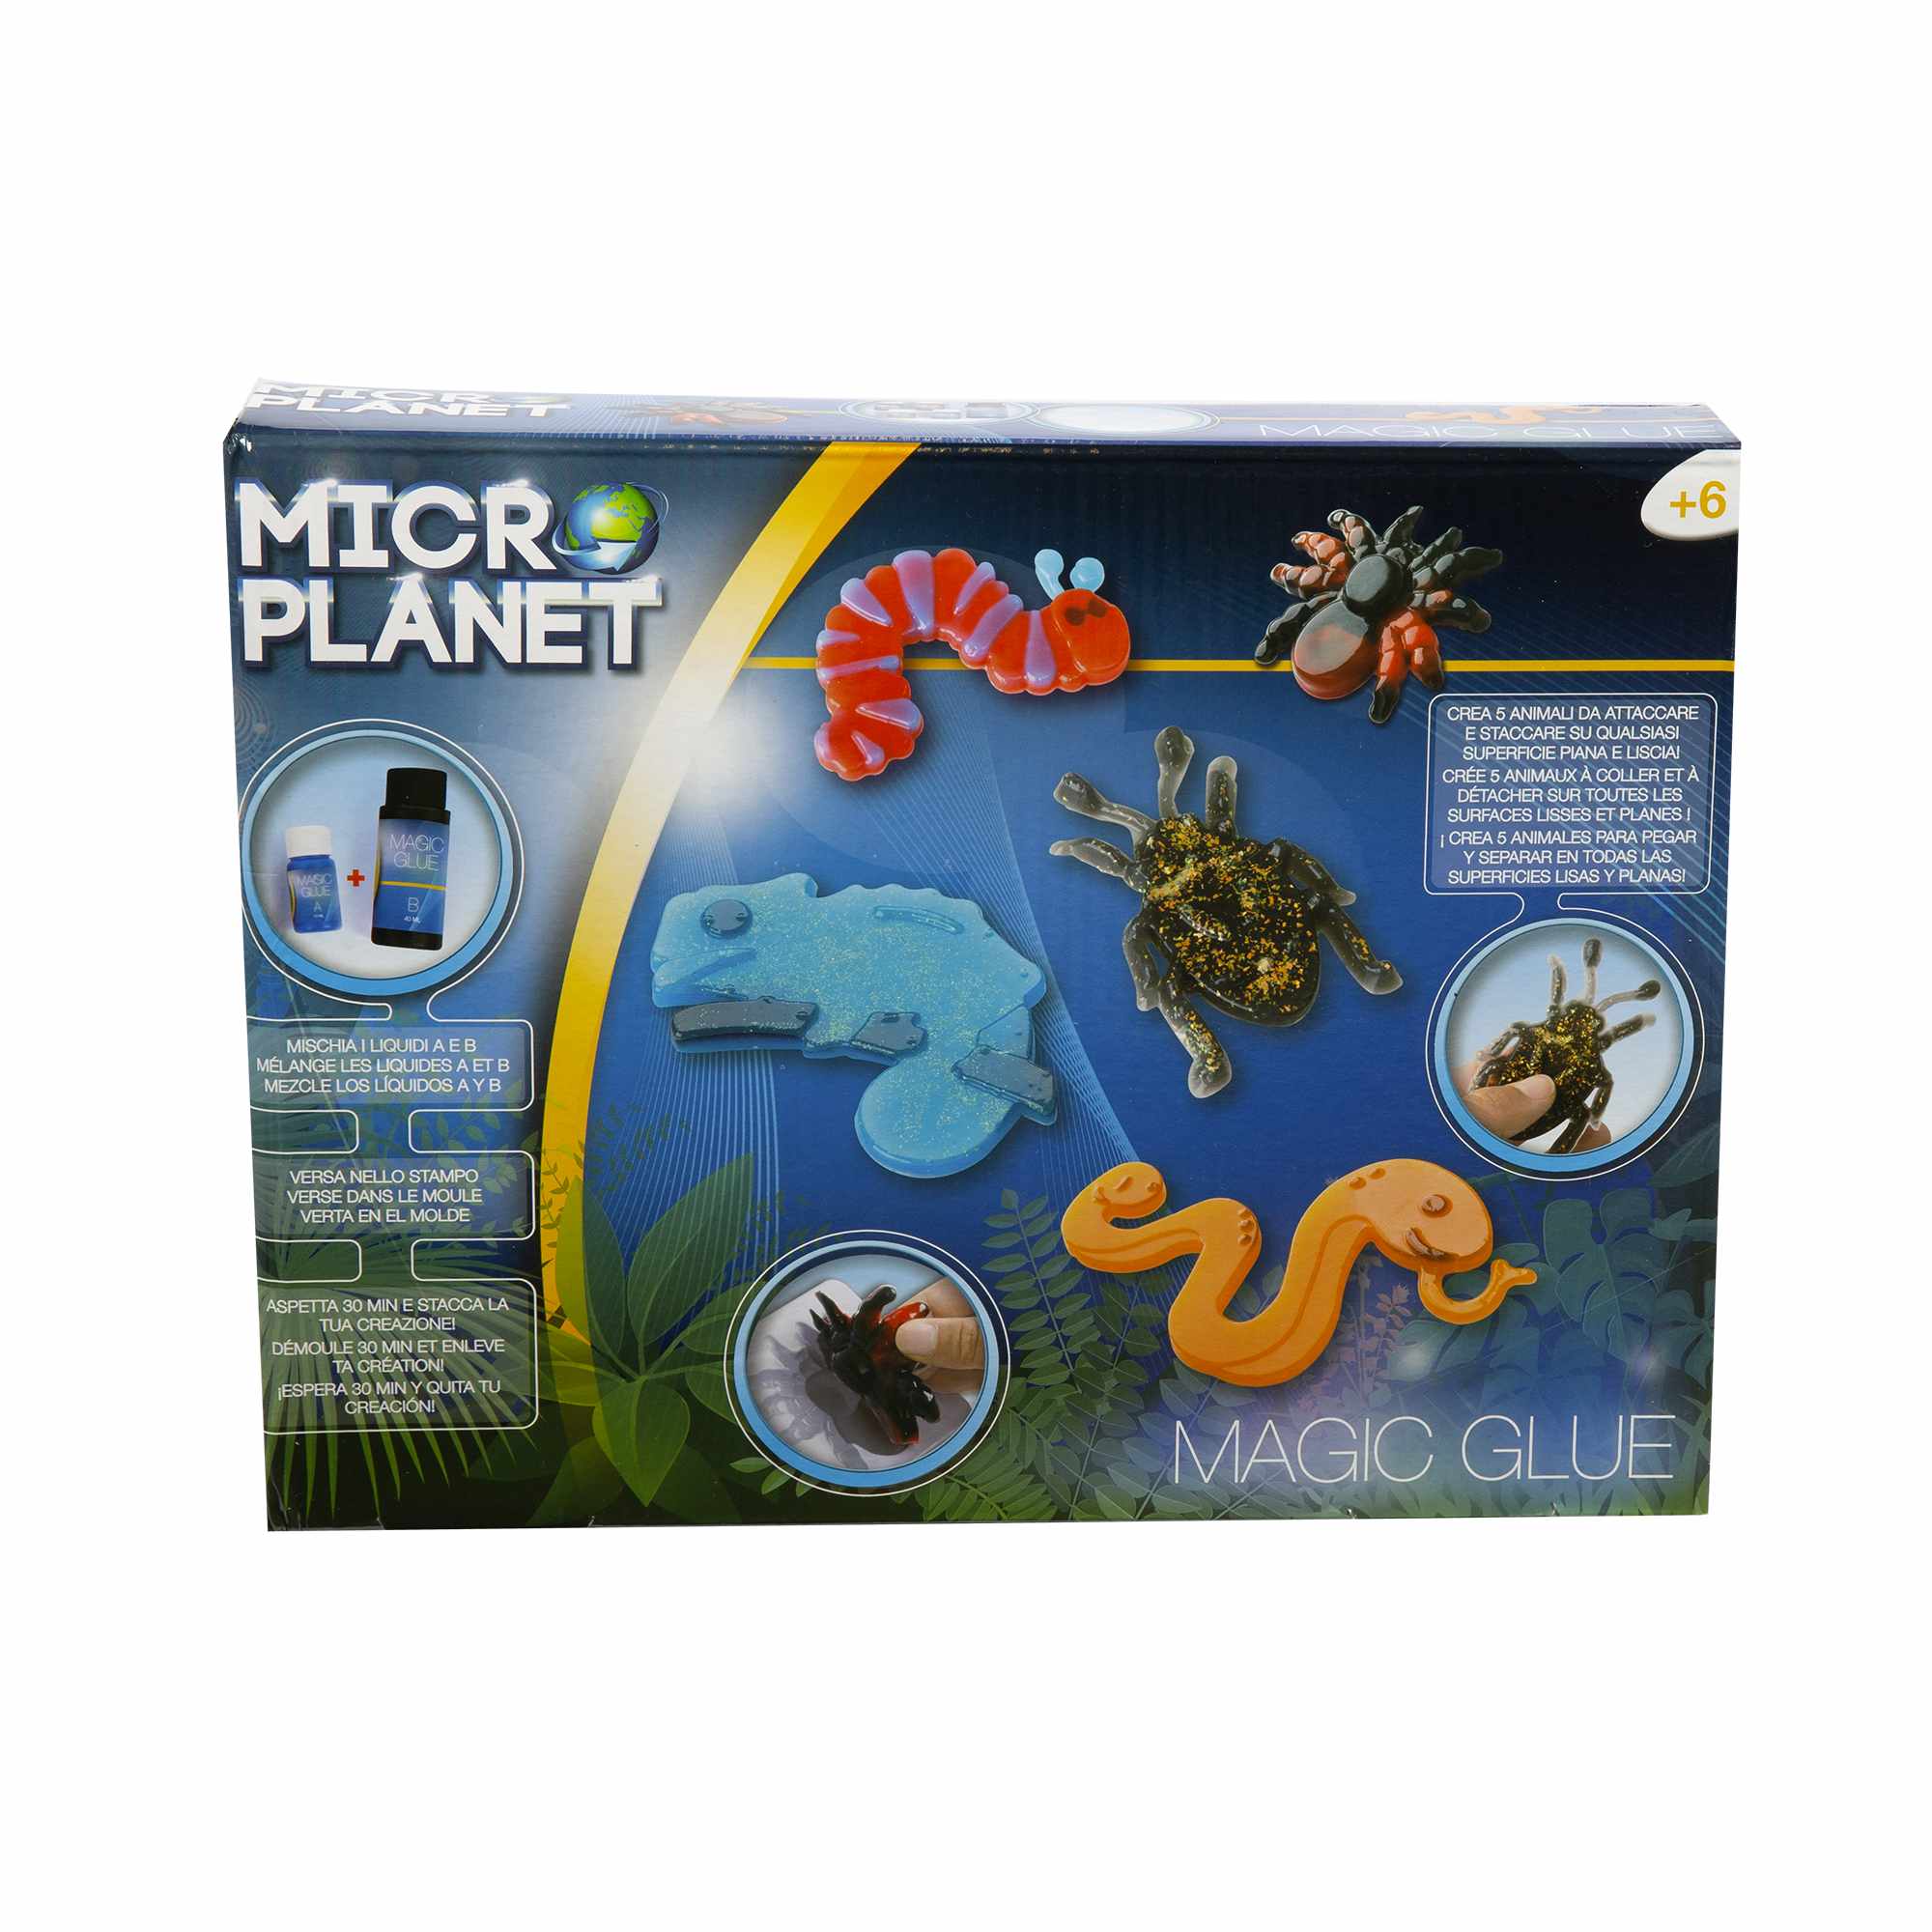 Magic glue - colla magica 5 insetti - MICRO PLANET